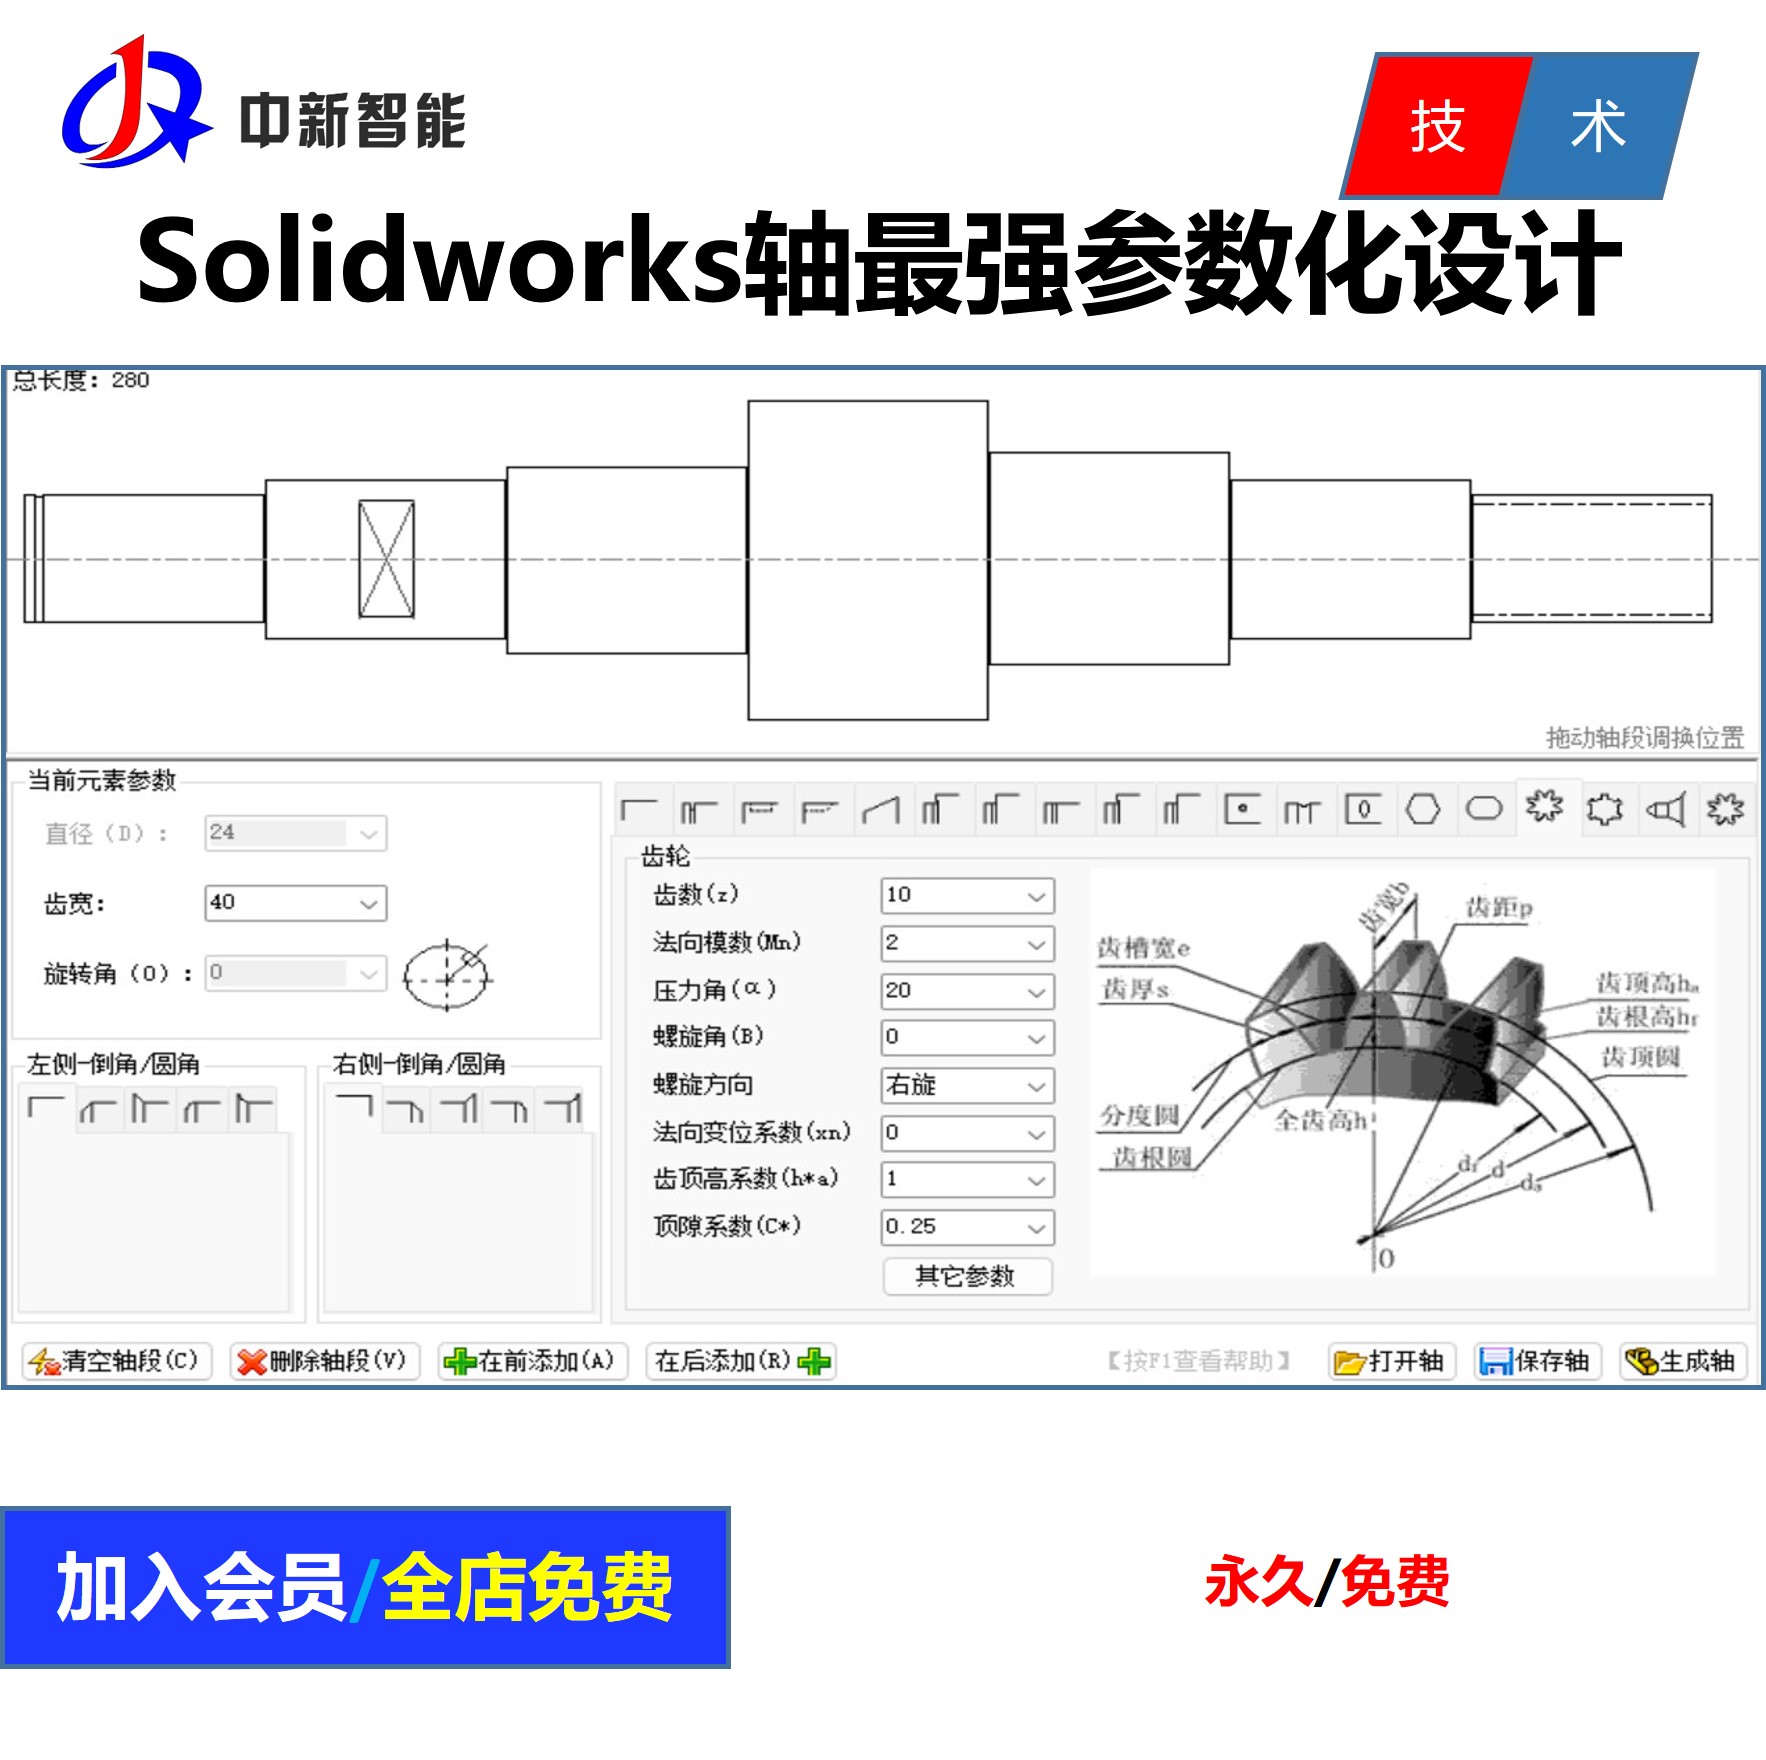 Solidworks轴参数化设计软件 齿轮轴 键槽轴 阶梯轴 花键轴 软件